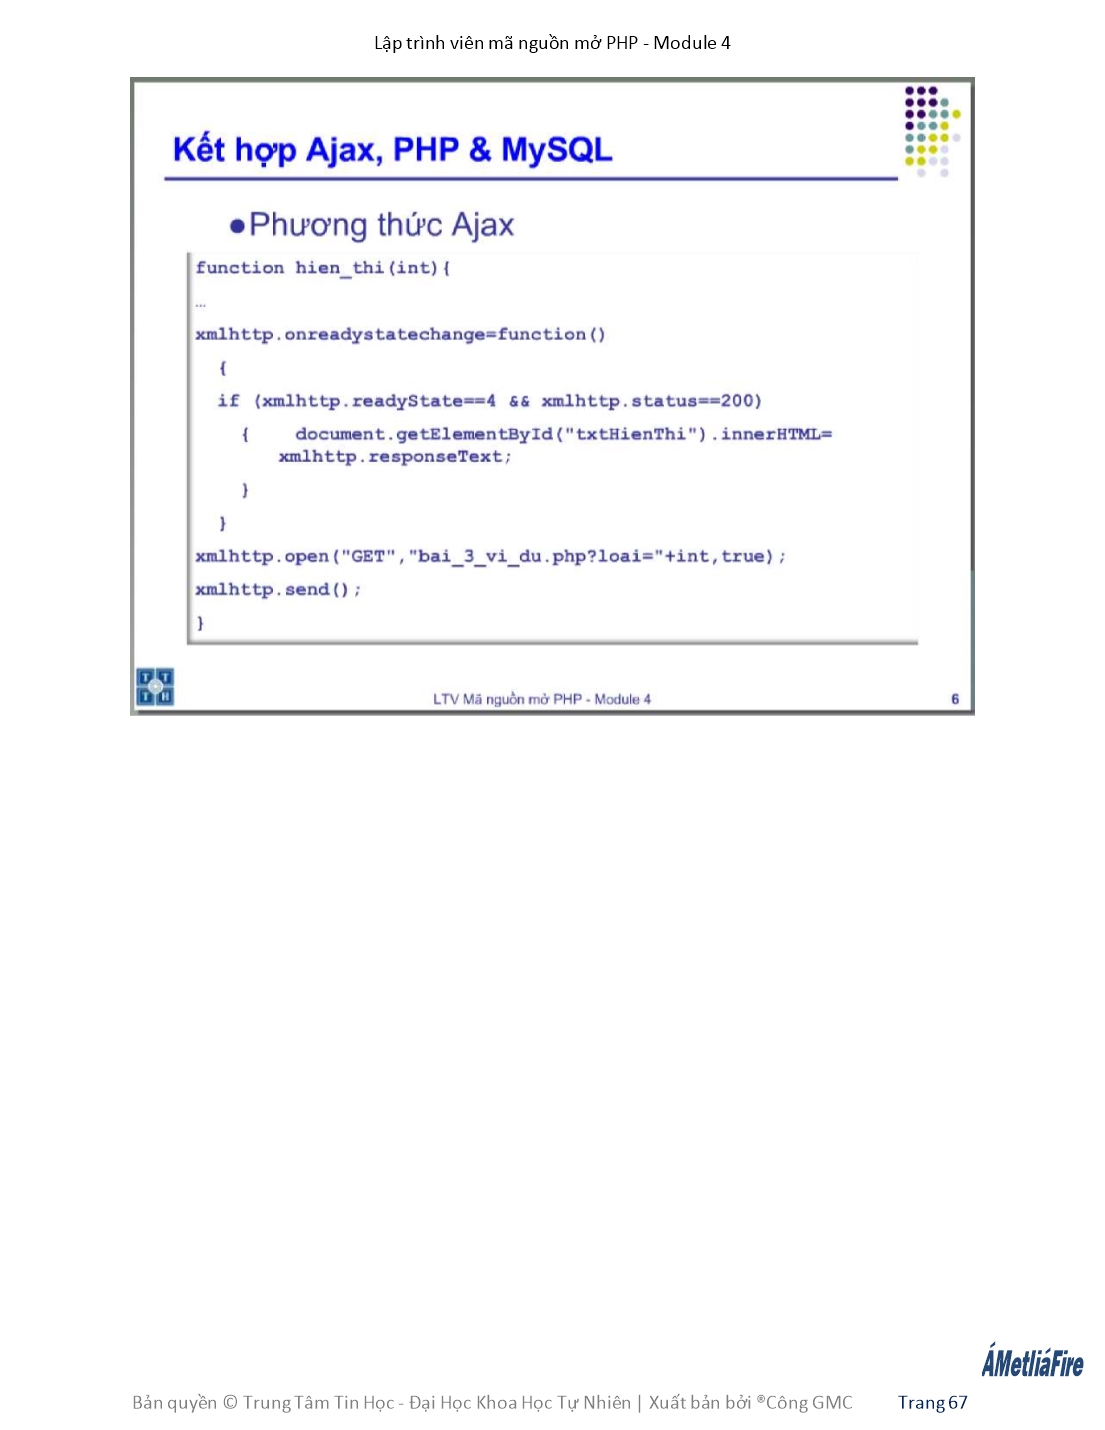 Giáo trình Module 4: Lập trình viên mã nguồn mở PHP - Bài 6: Ajax 2 trang 4